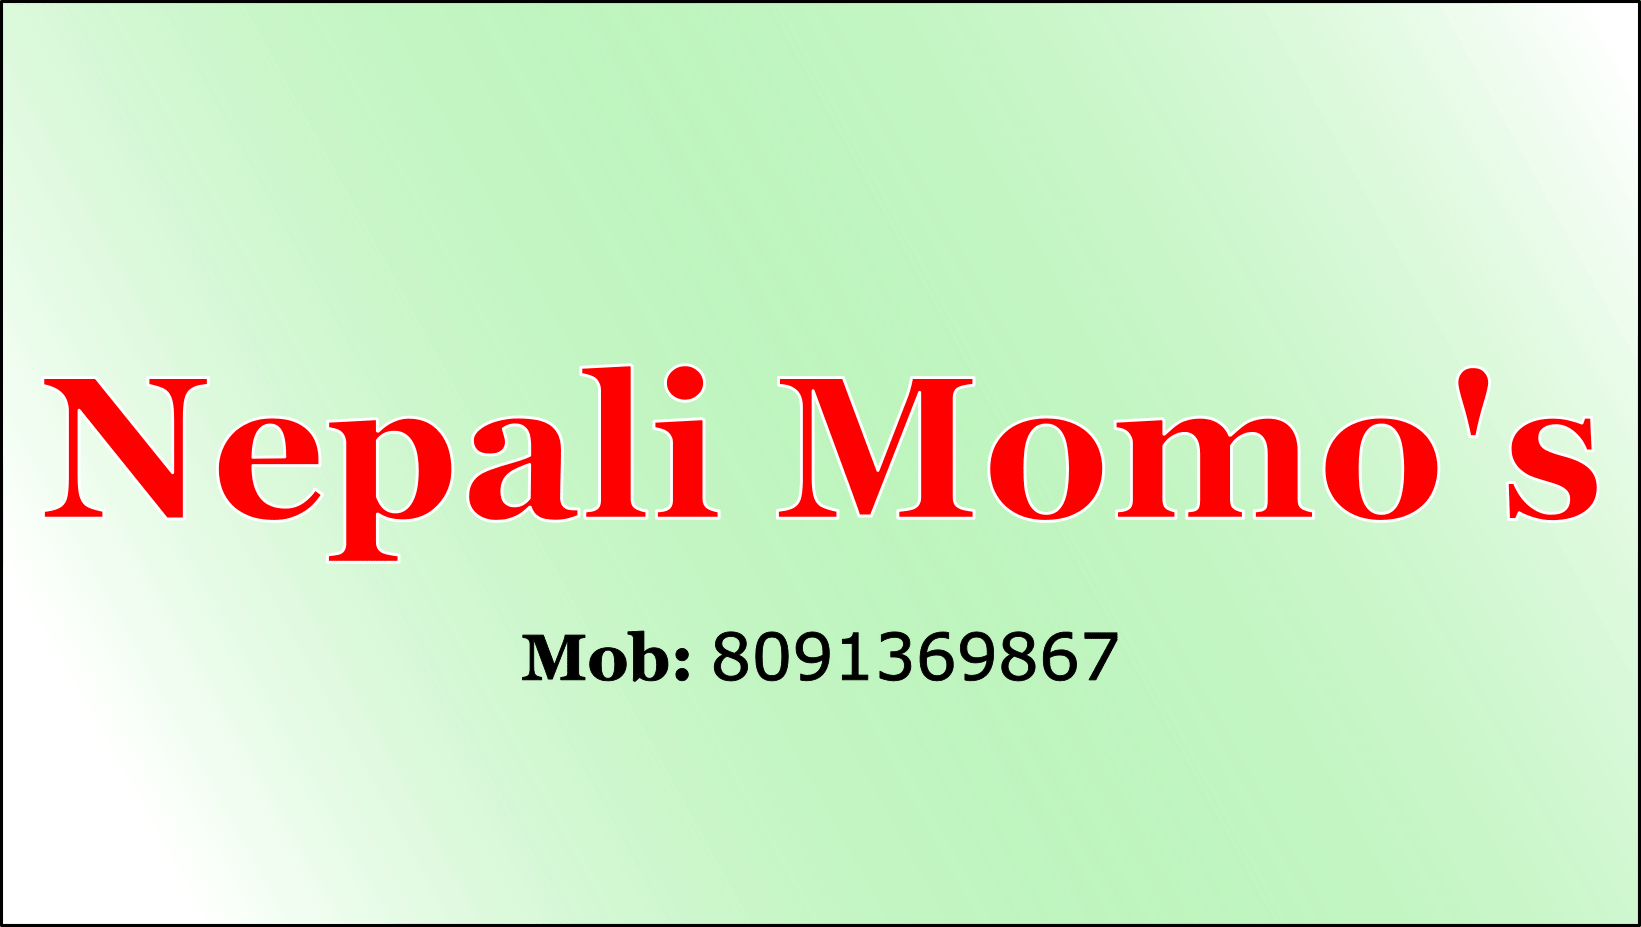 Nepali Momos